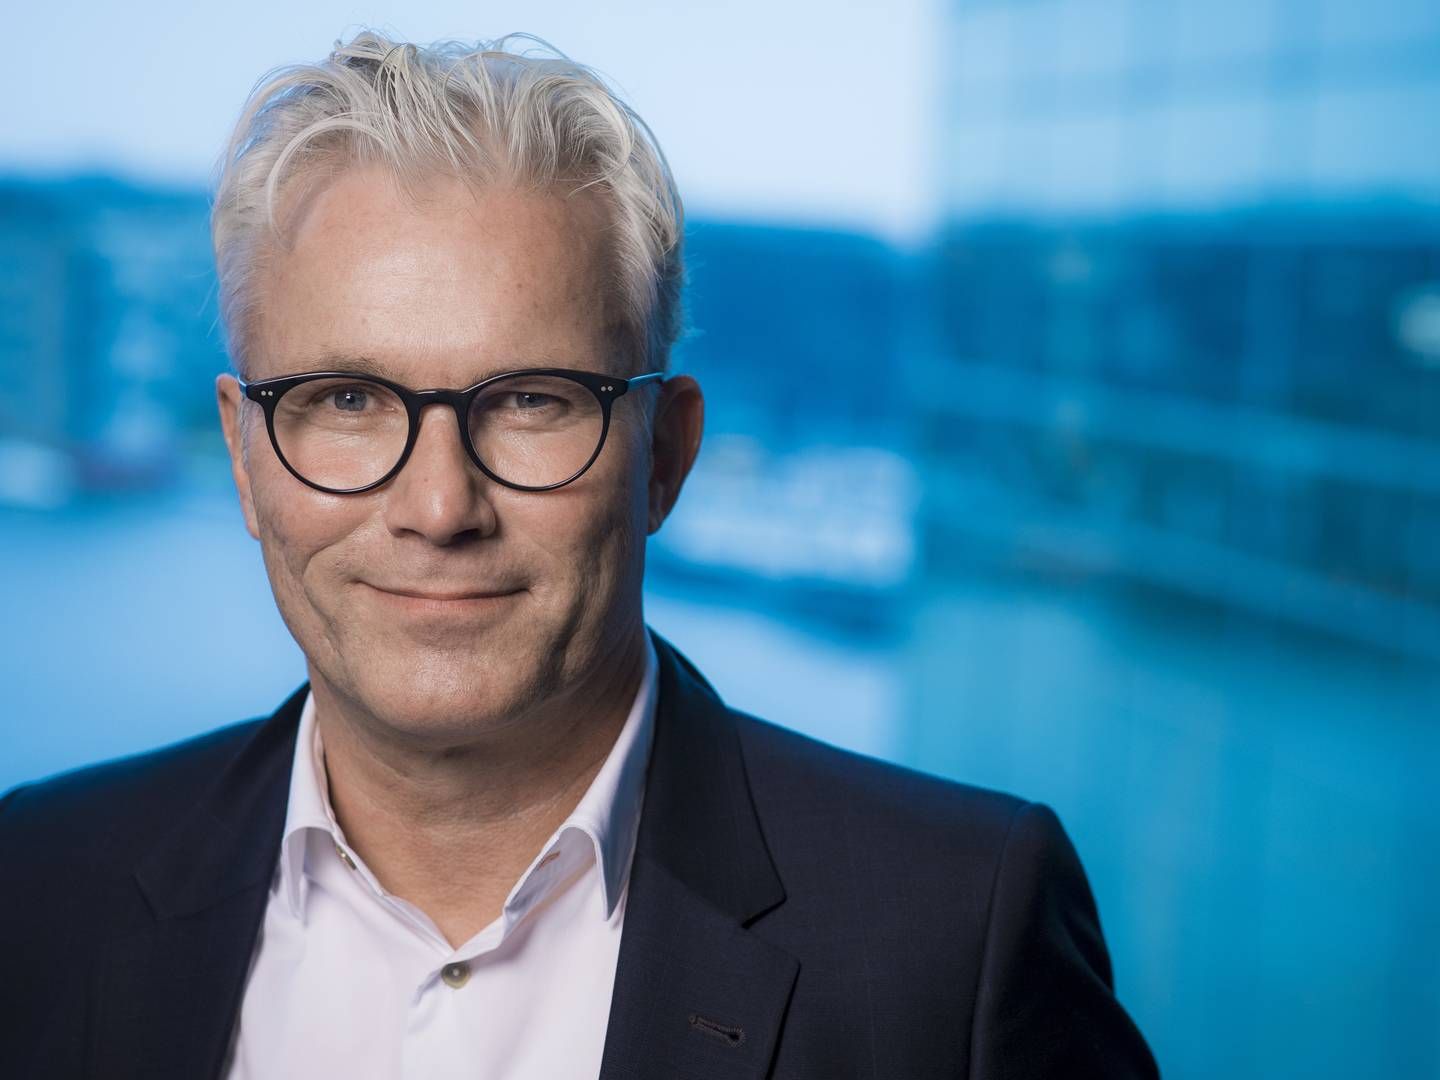 Adm. direktør for Telenor Danmark, Jesper Hansen. | Foto: Telenor / PR